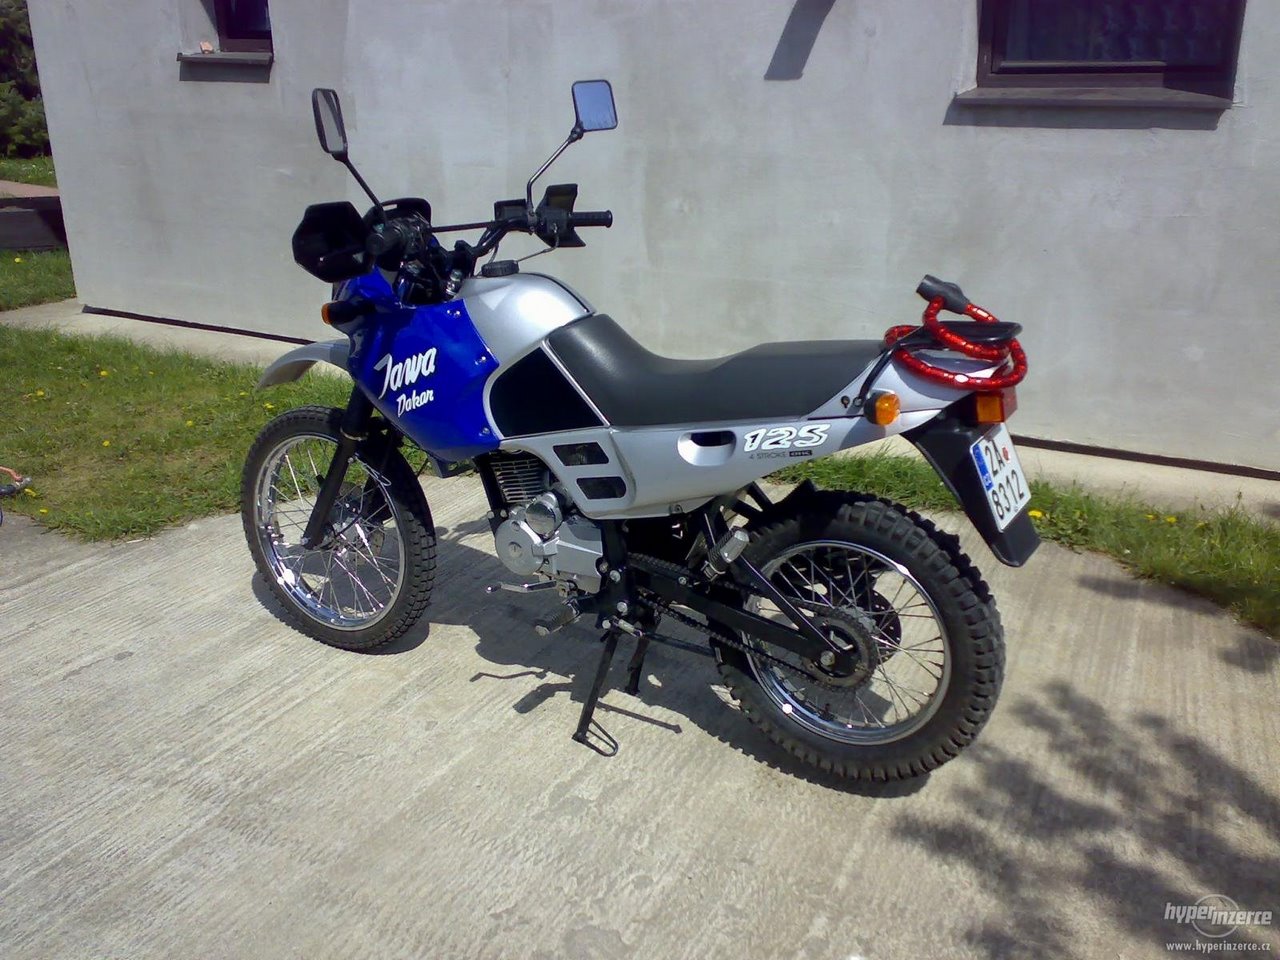 Jawa 650 Dakar